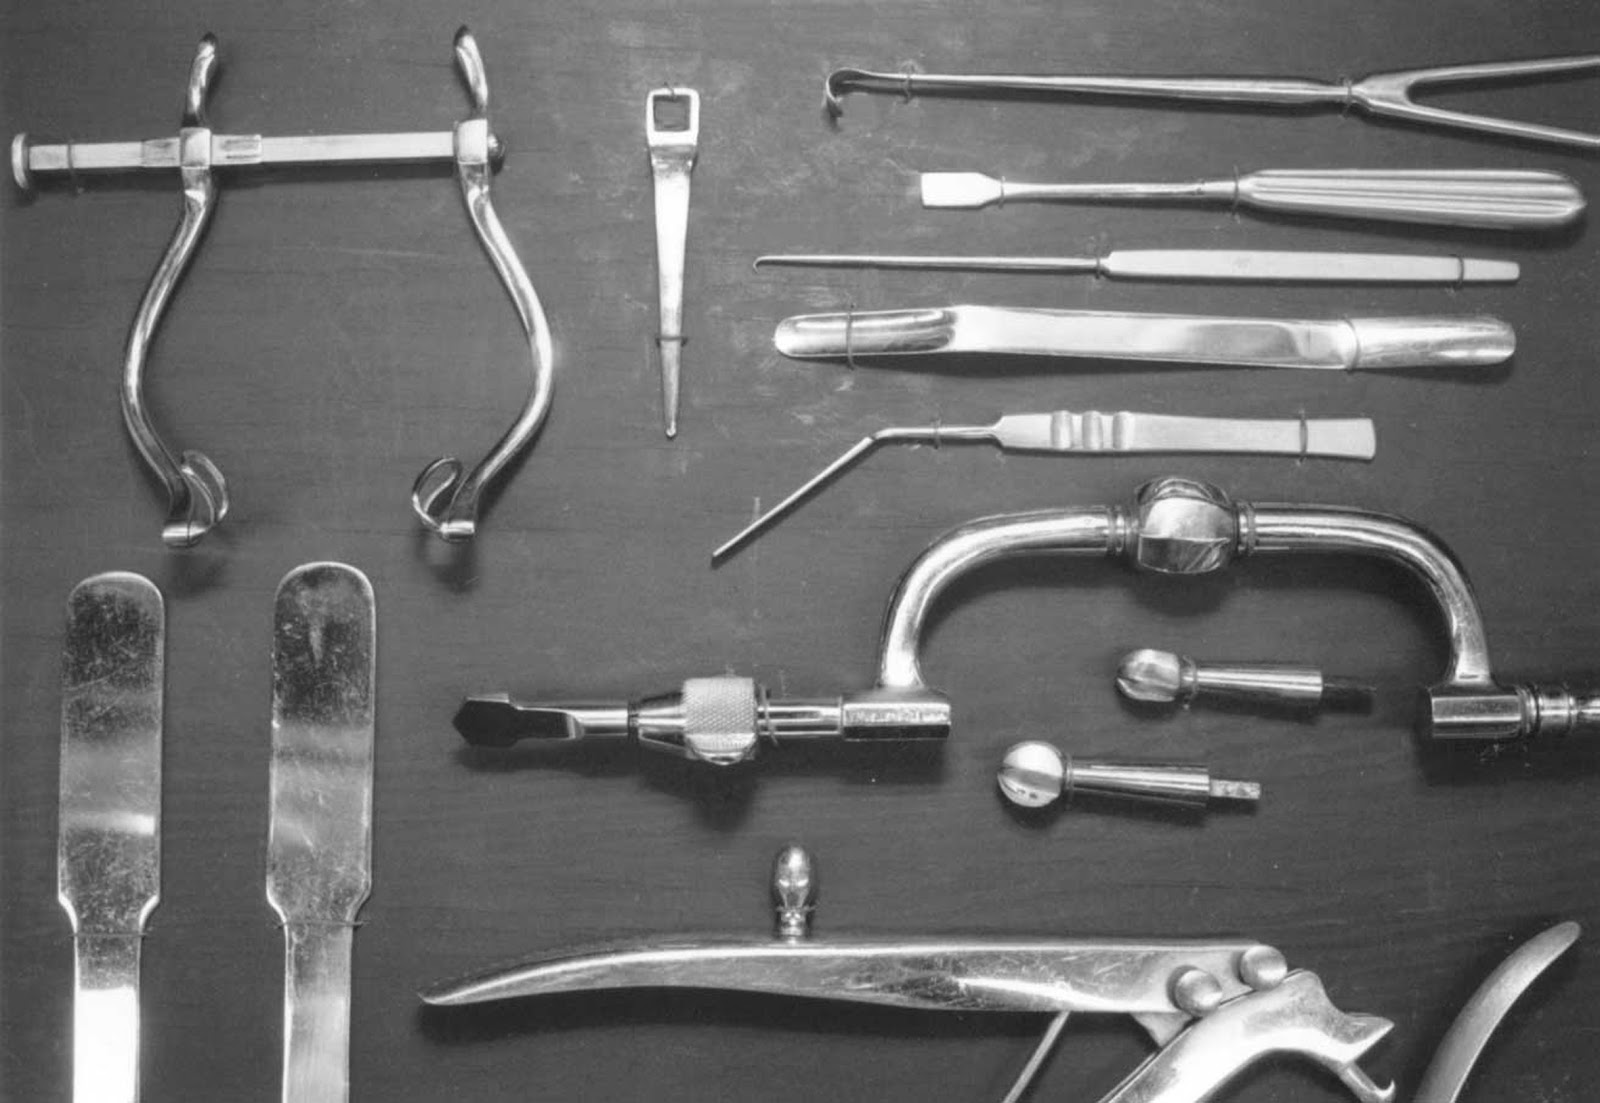 Lobotomy tools